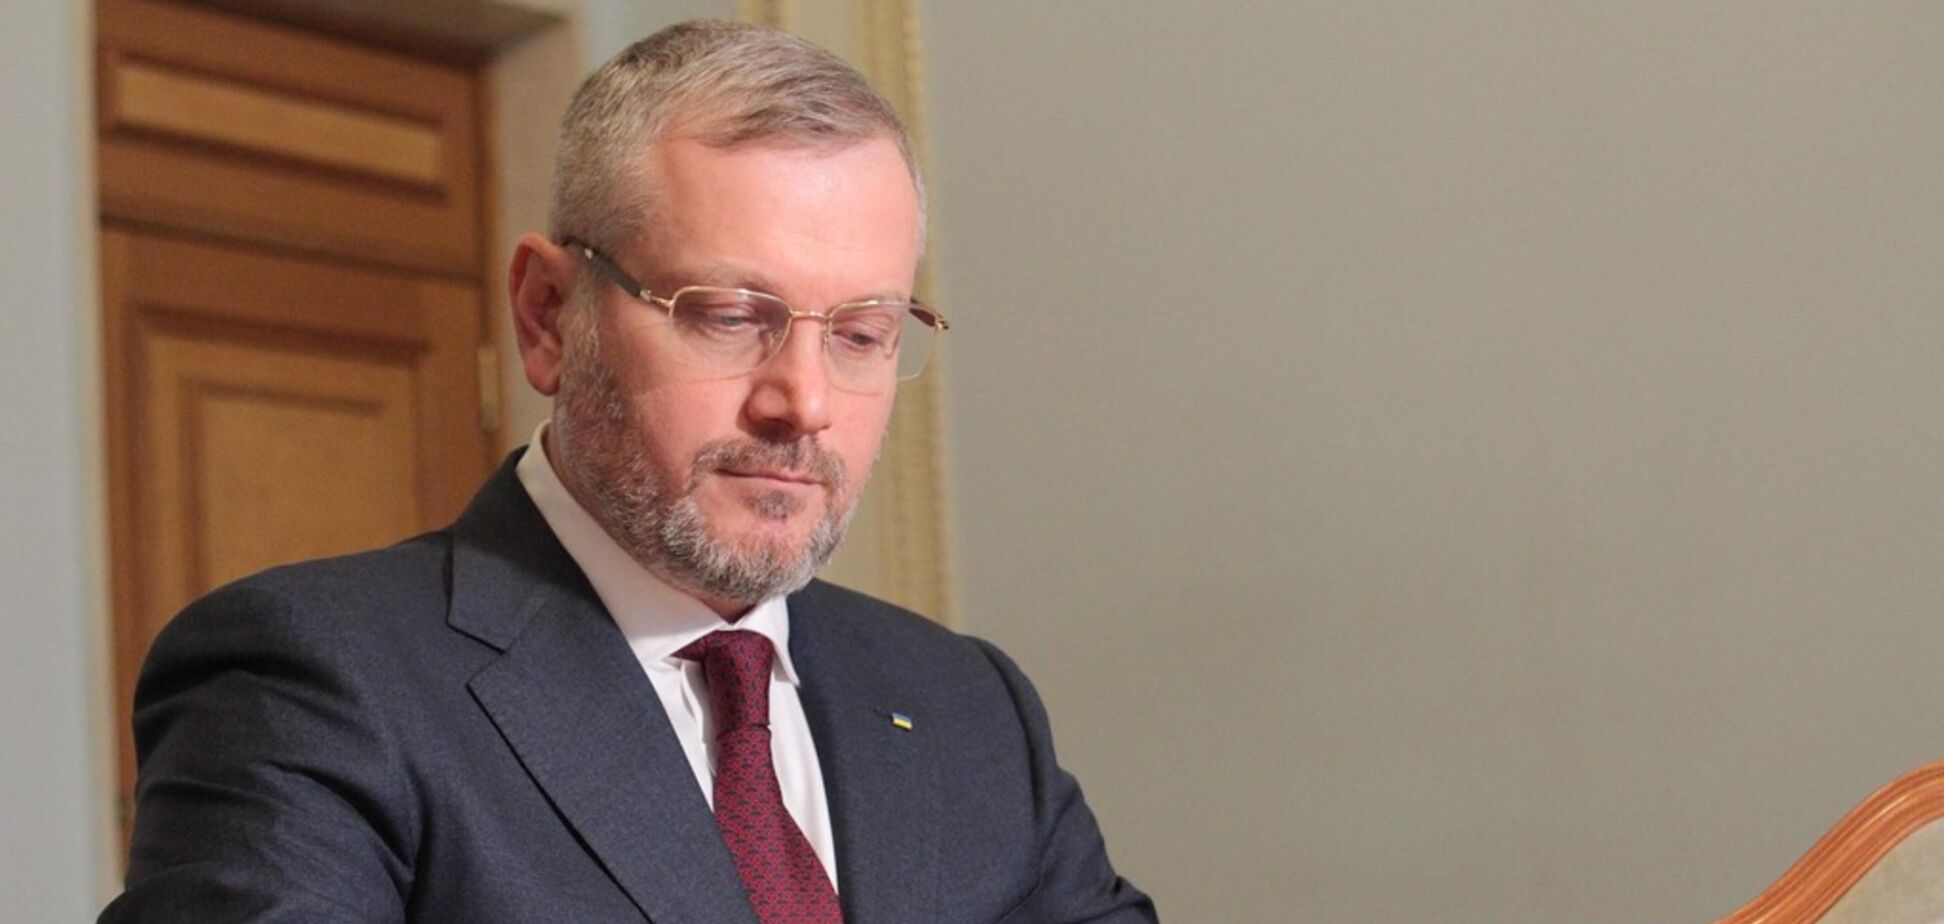 Вилкул внес в Верховную Раду законопроект о снятии блокады с Донбасса